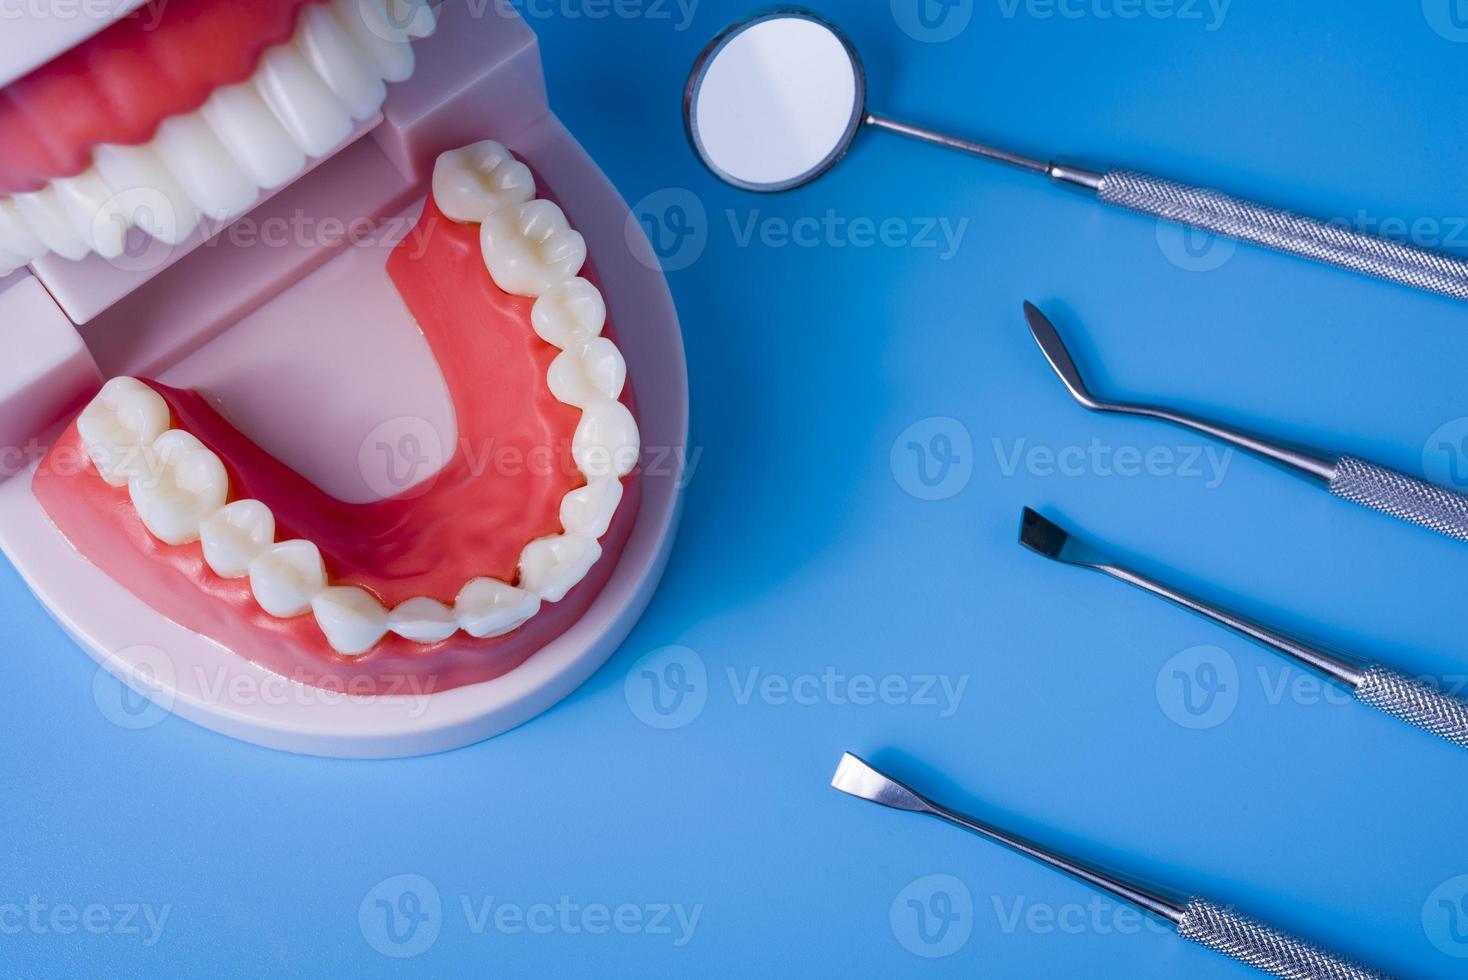 modelo de dentes com ferramentas dentárias em fundo azul foto